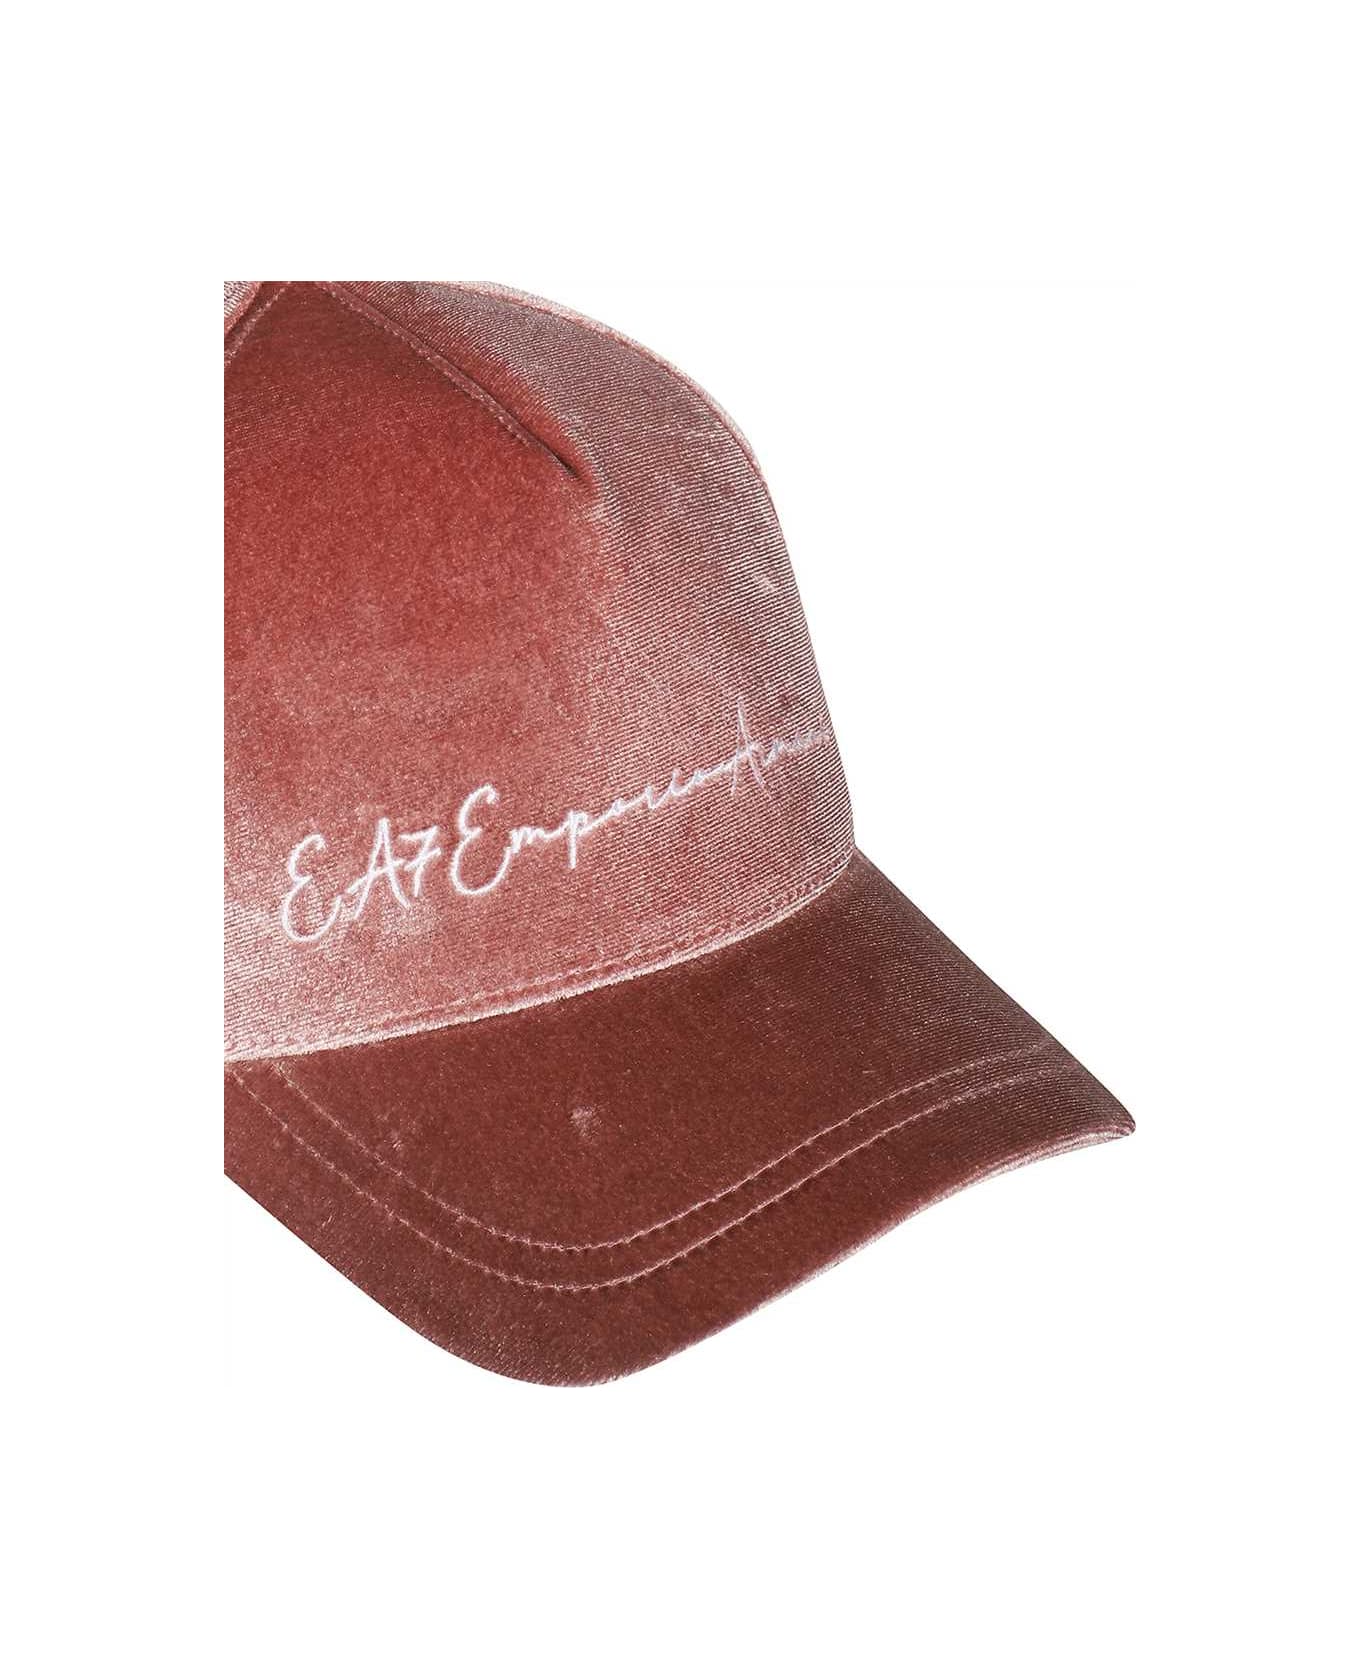 EA7 Baseball Cap - Pink